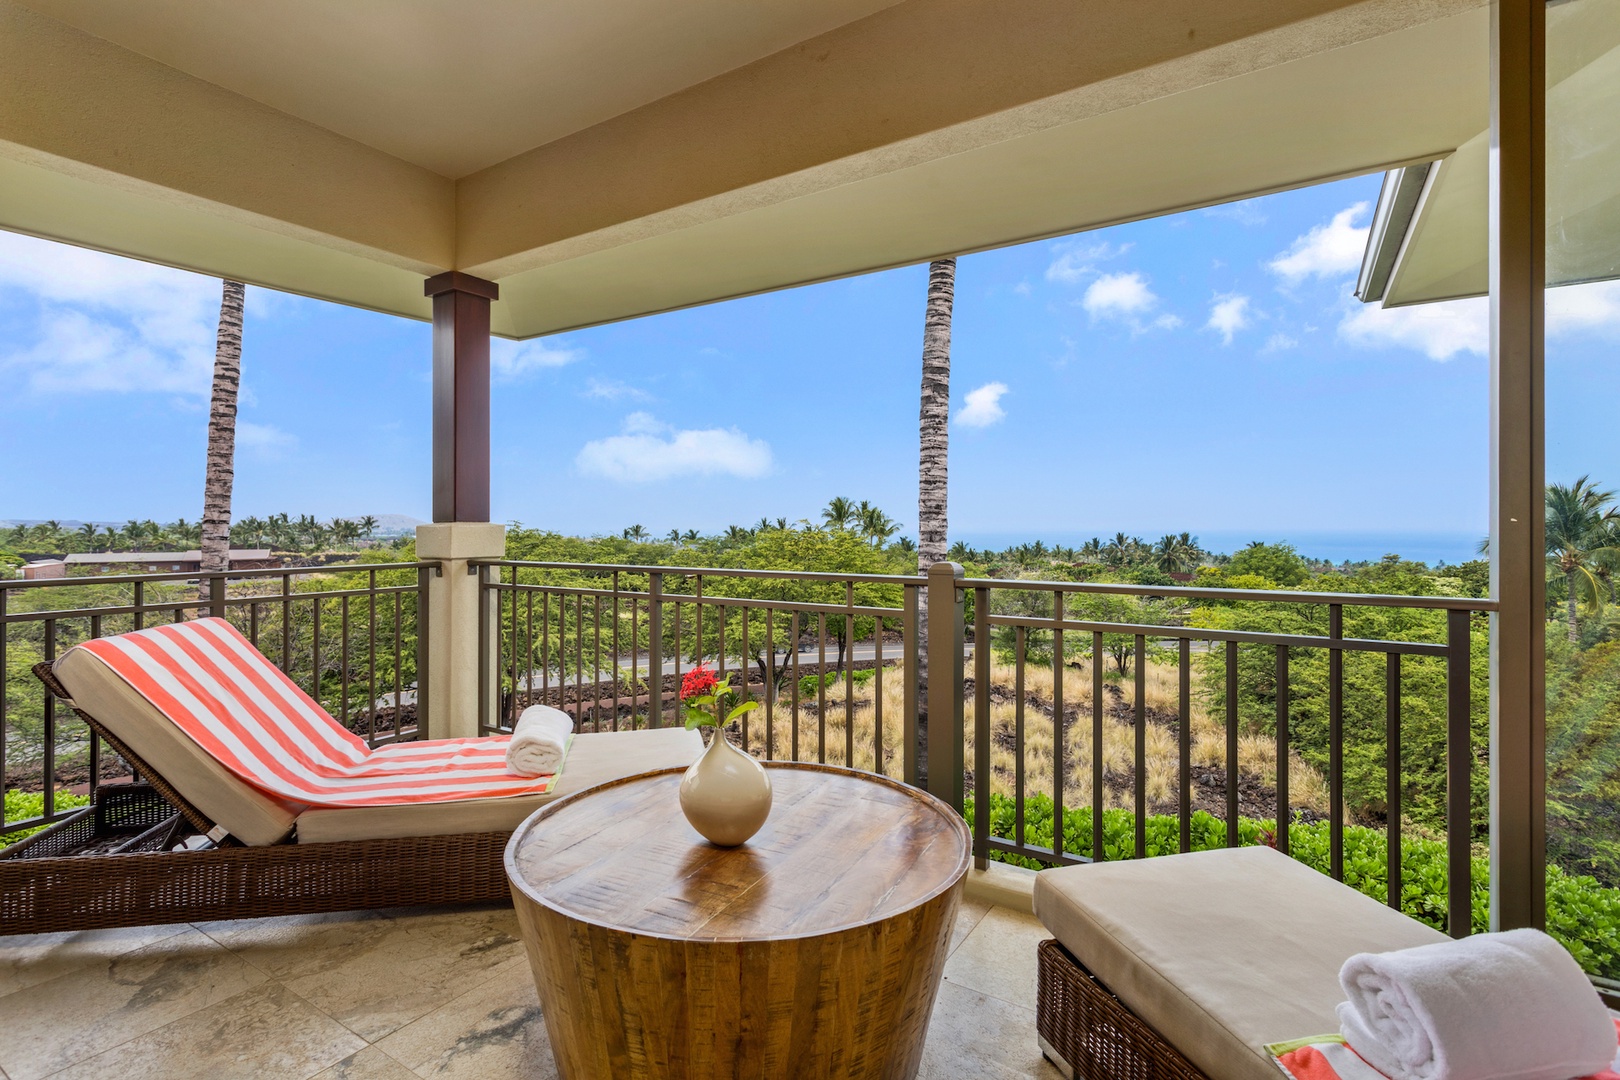 Kailua Kona Vacation Rentals, 3BD Hainoa Villa (2901D) at Four Seasons Resort at Hualalai - Alternate view of primary lanai.